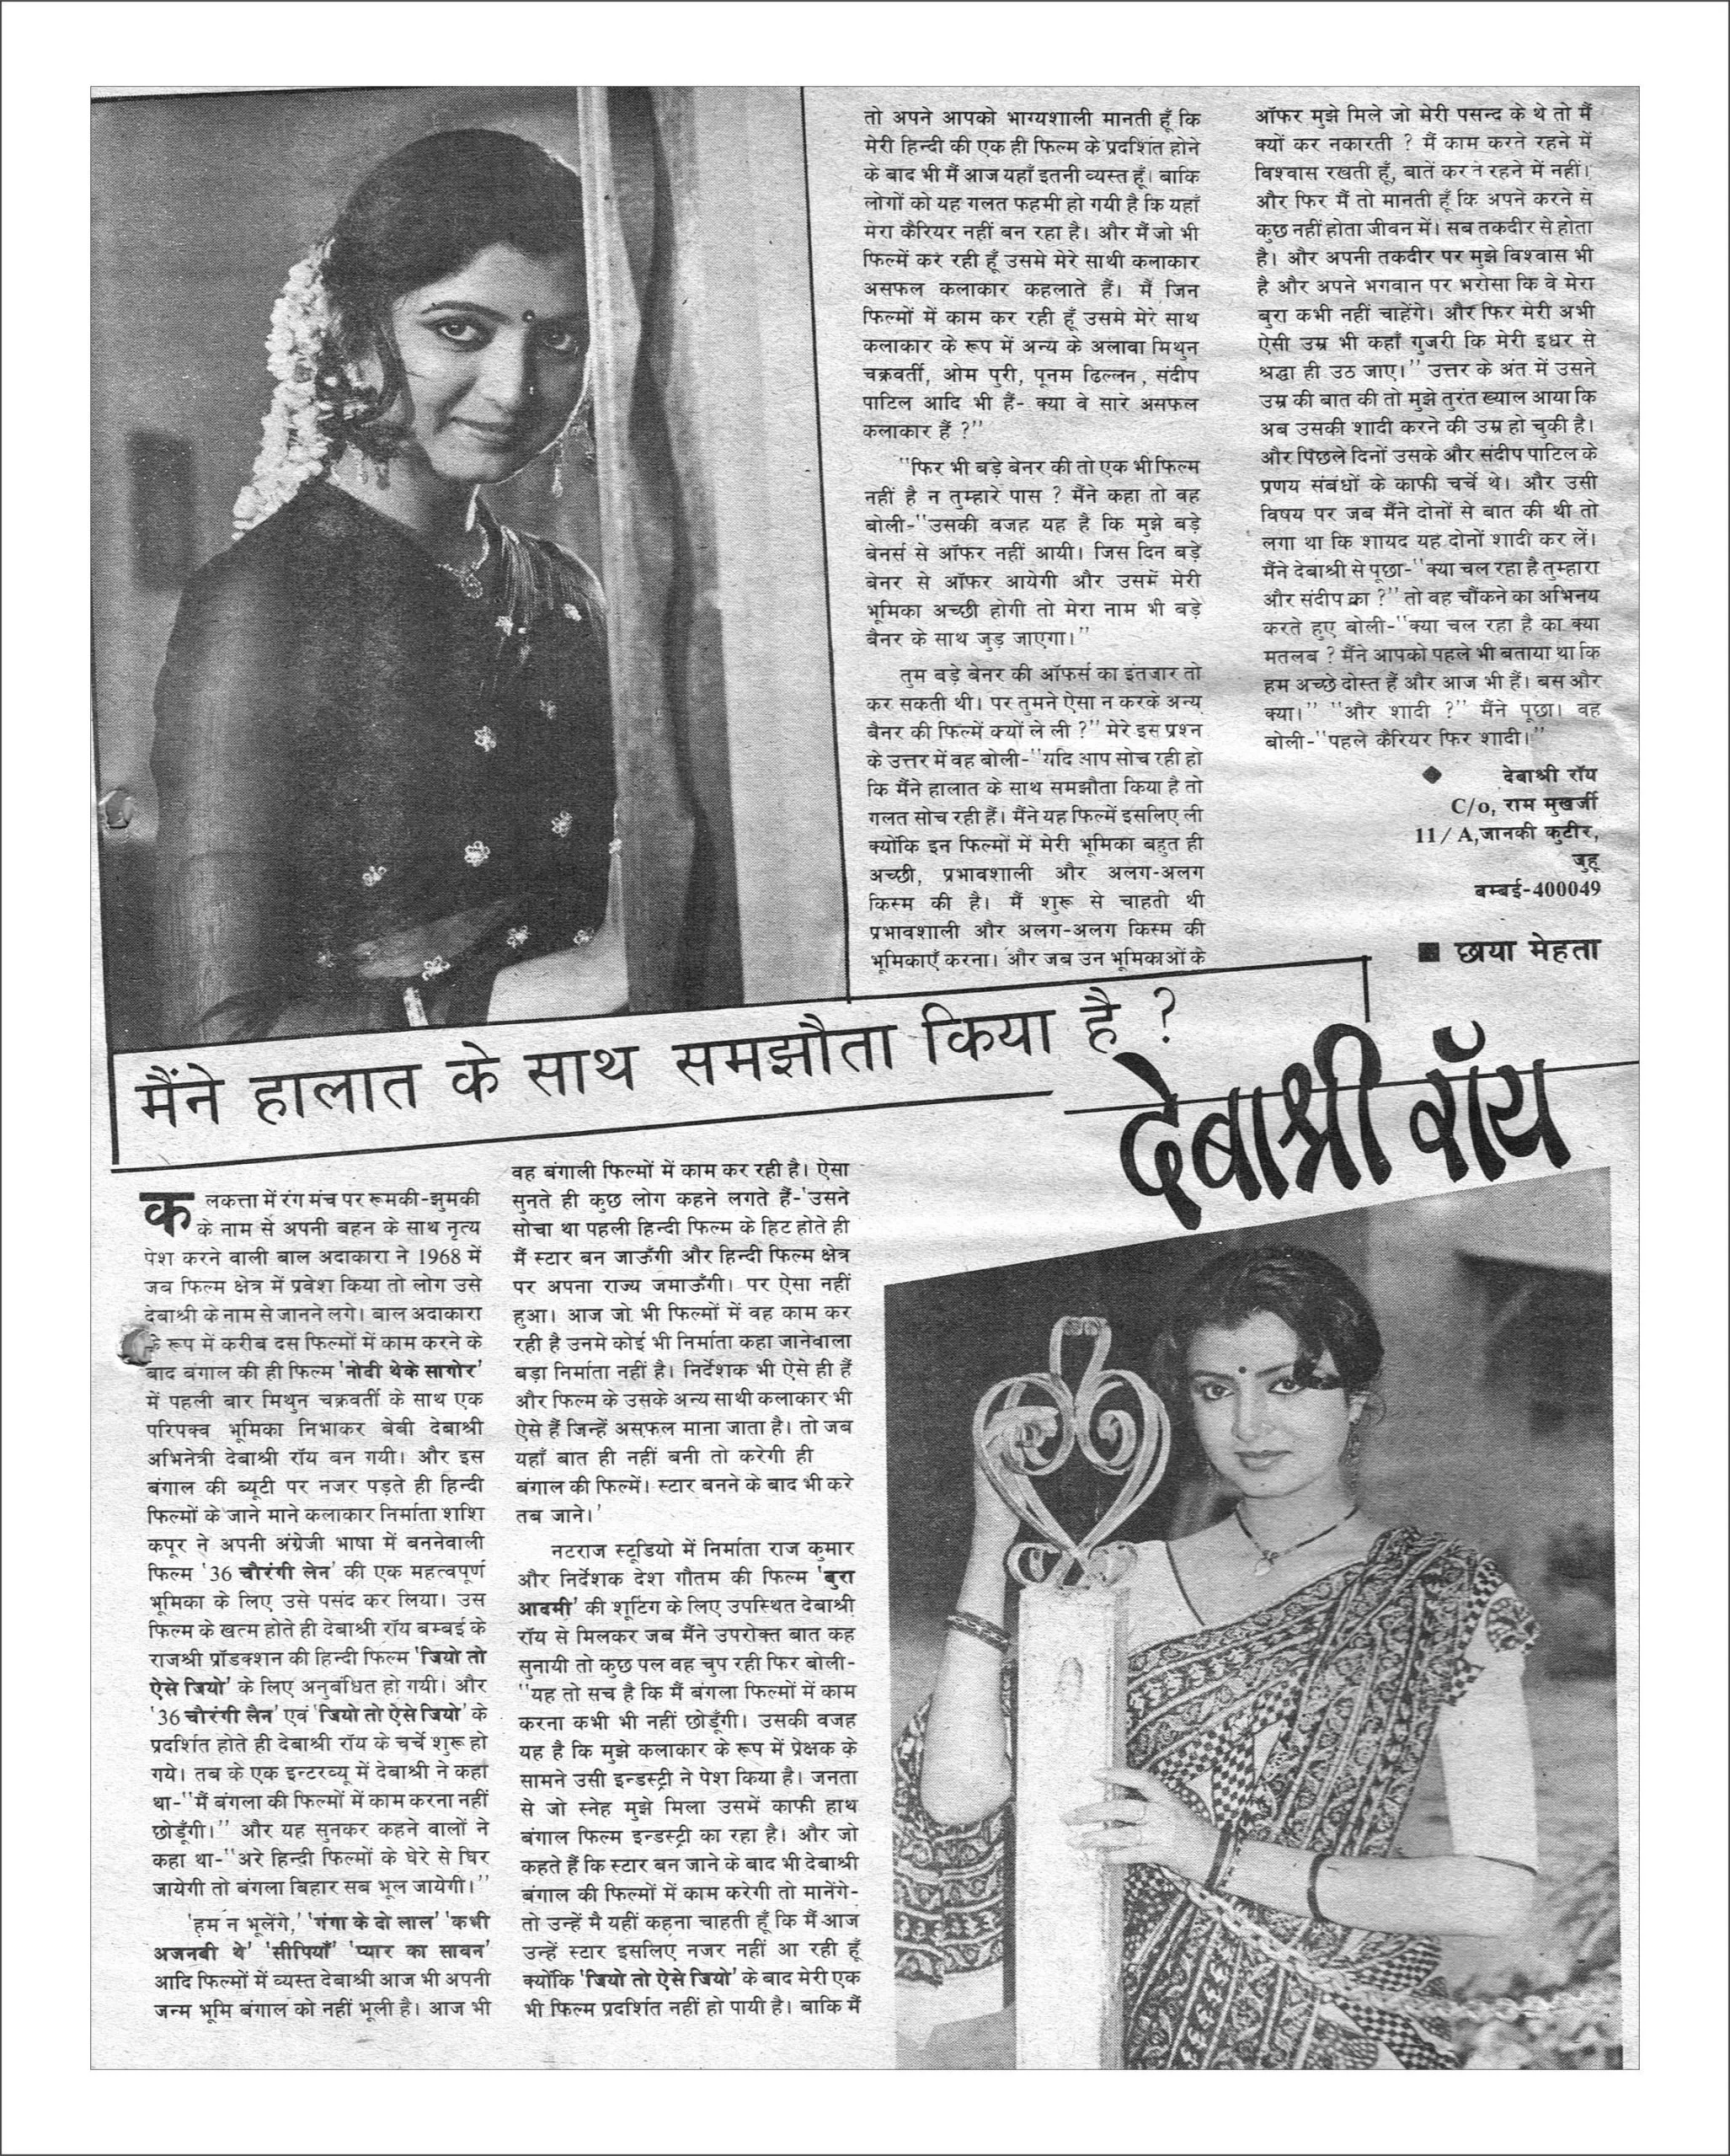 भारत की सबसे पहली हिंदी बॉलीवुड मैगज़ीन मायापुरी का 1984 में प्रकाशित एडिशन